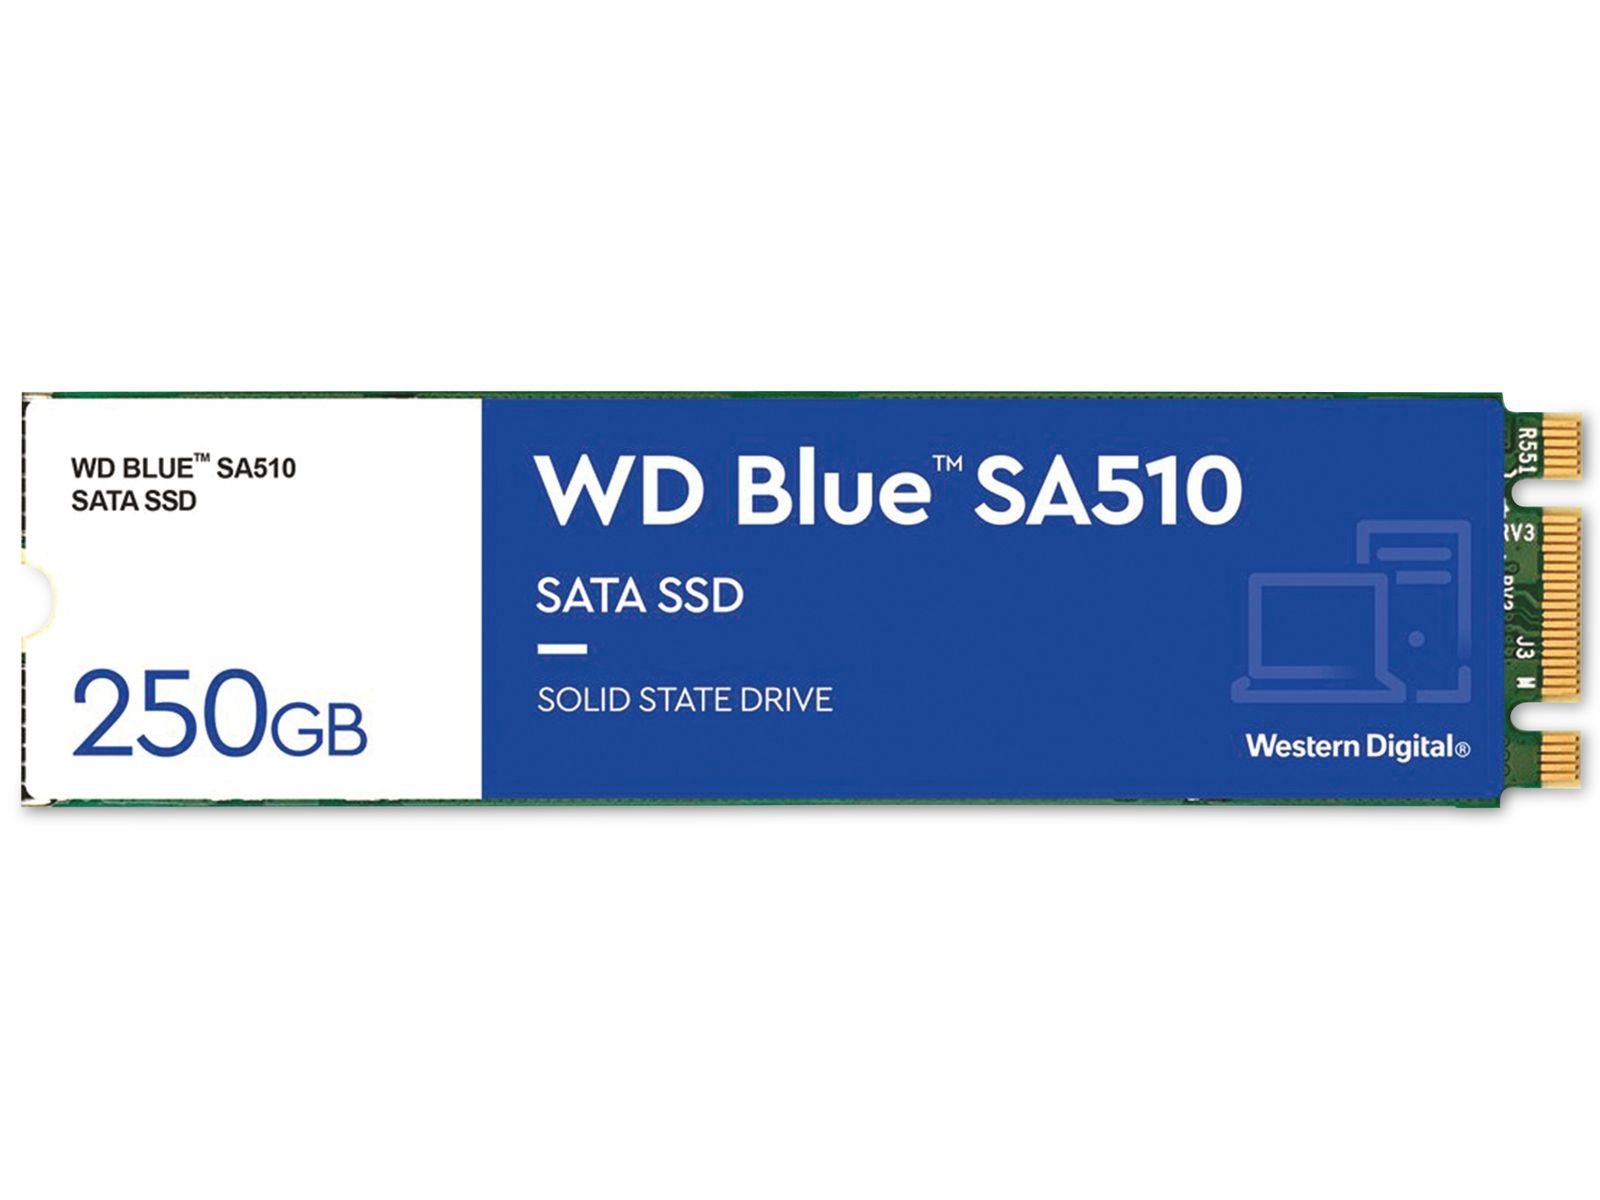 WESTERN DIGITAL M.2 SSD WD Blue SA510, 250 GB, intern von Western Digital